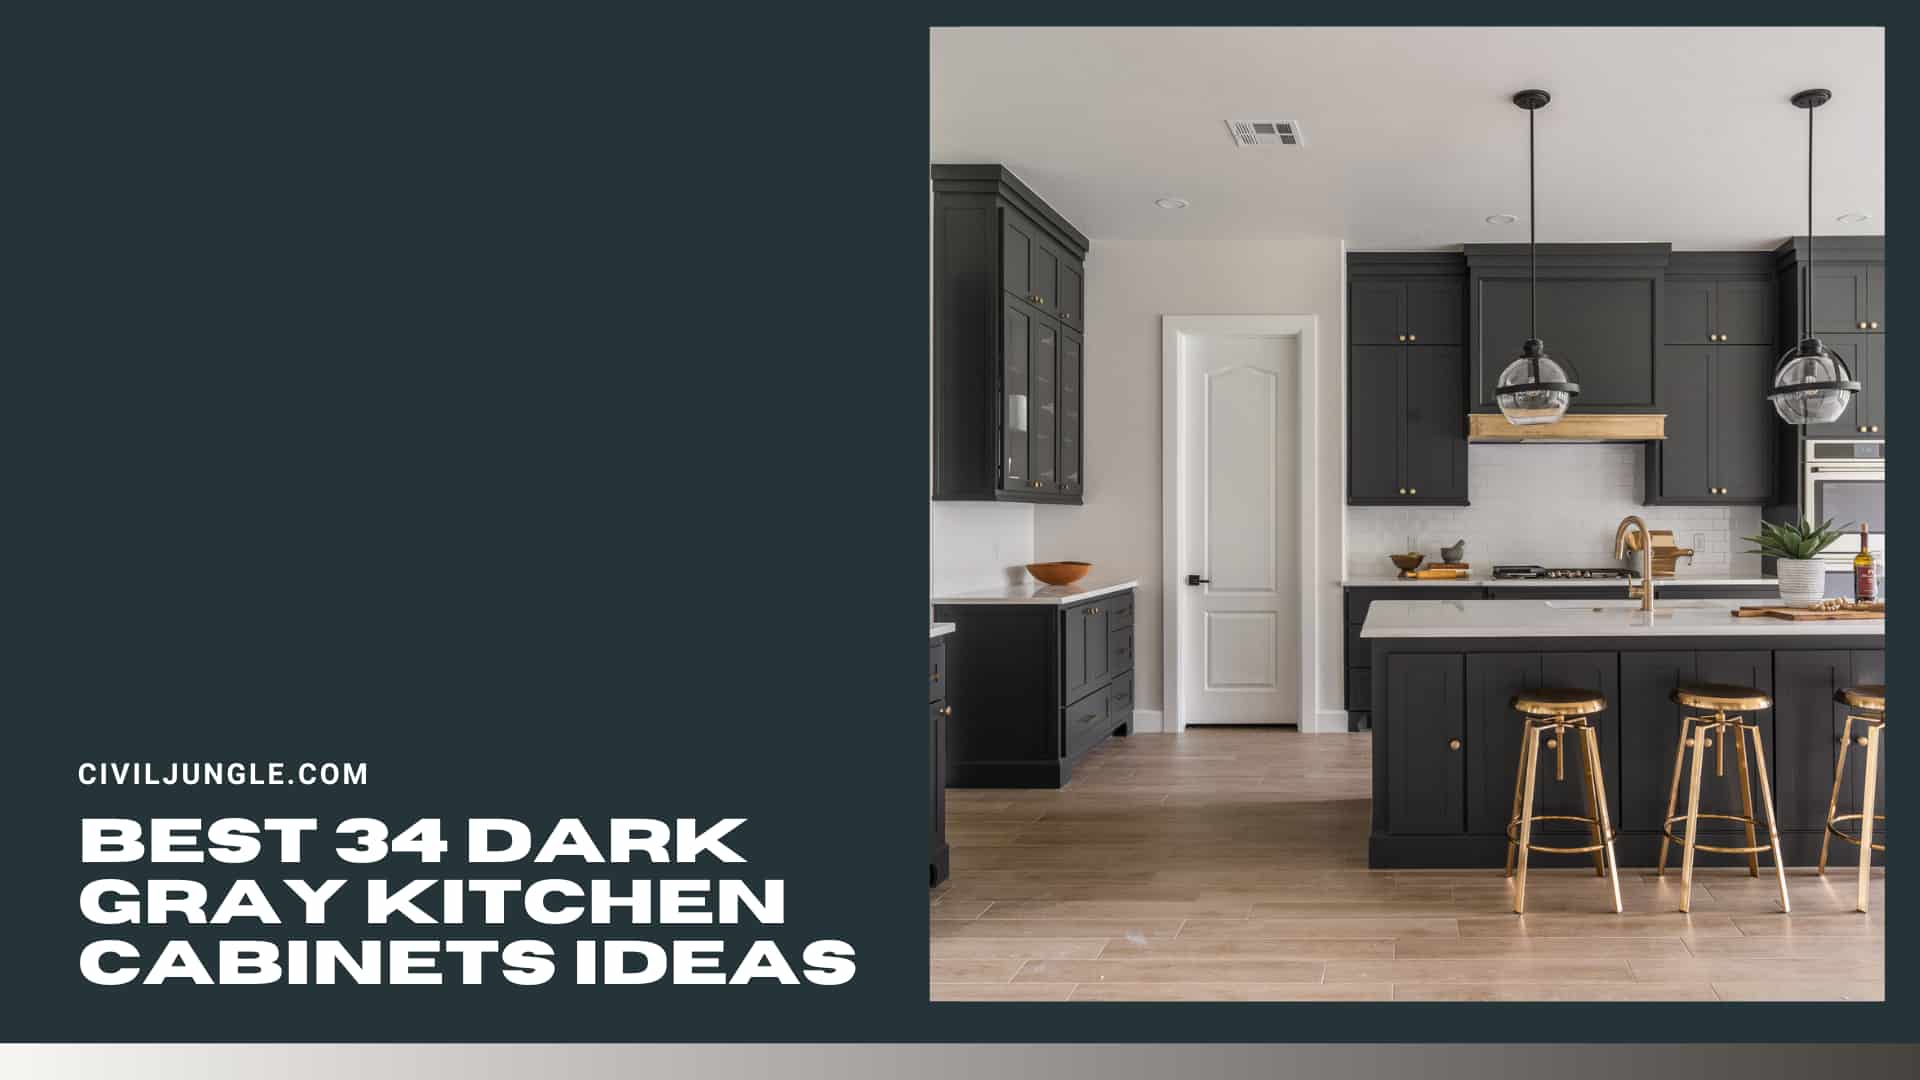 Best 34 Dark Gray Kitchen Cabinets ideas